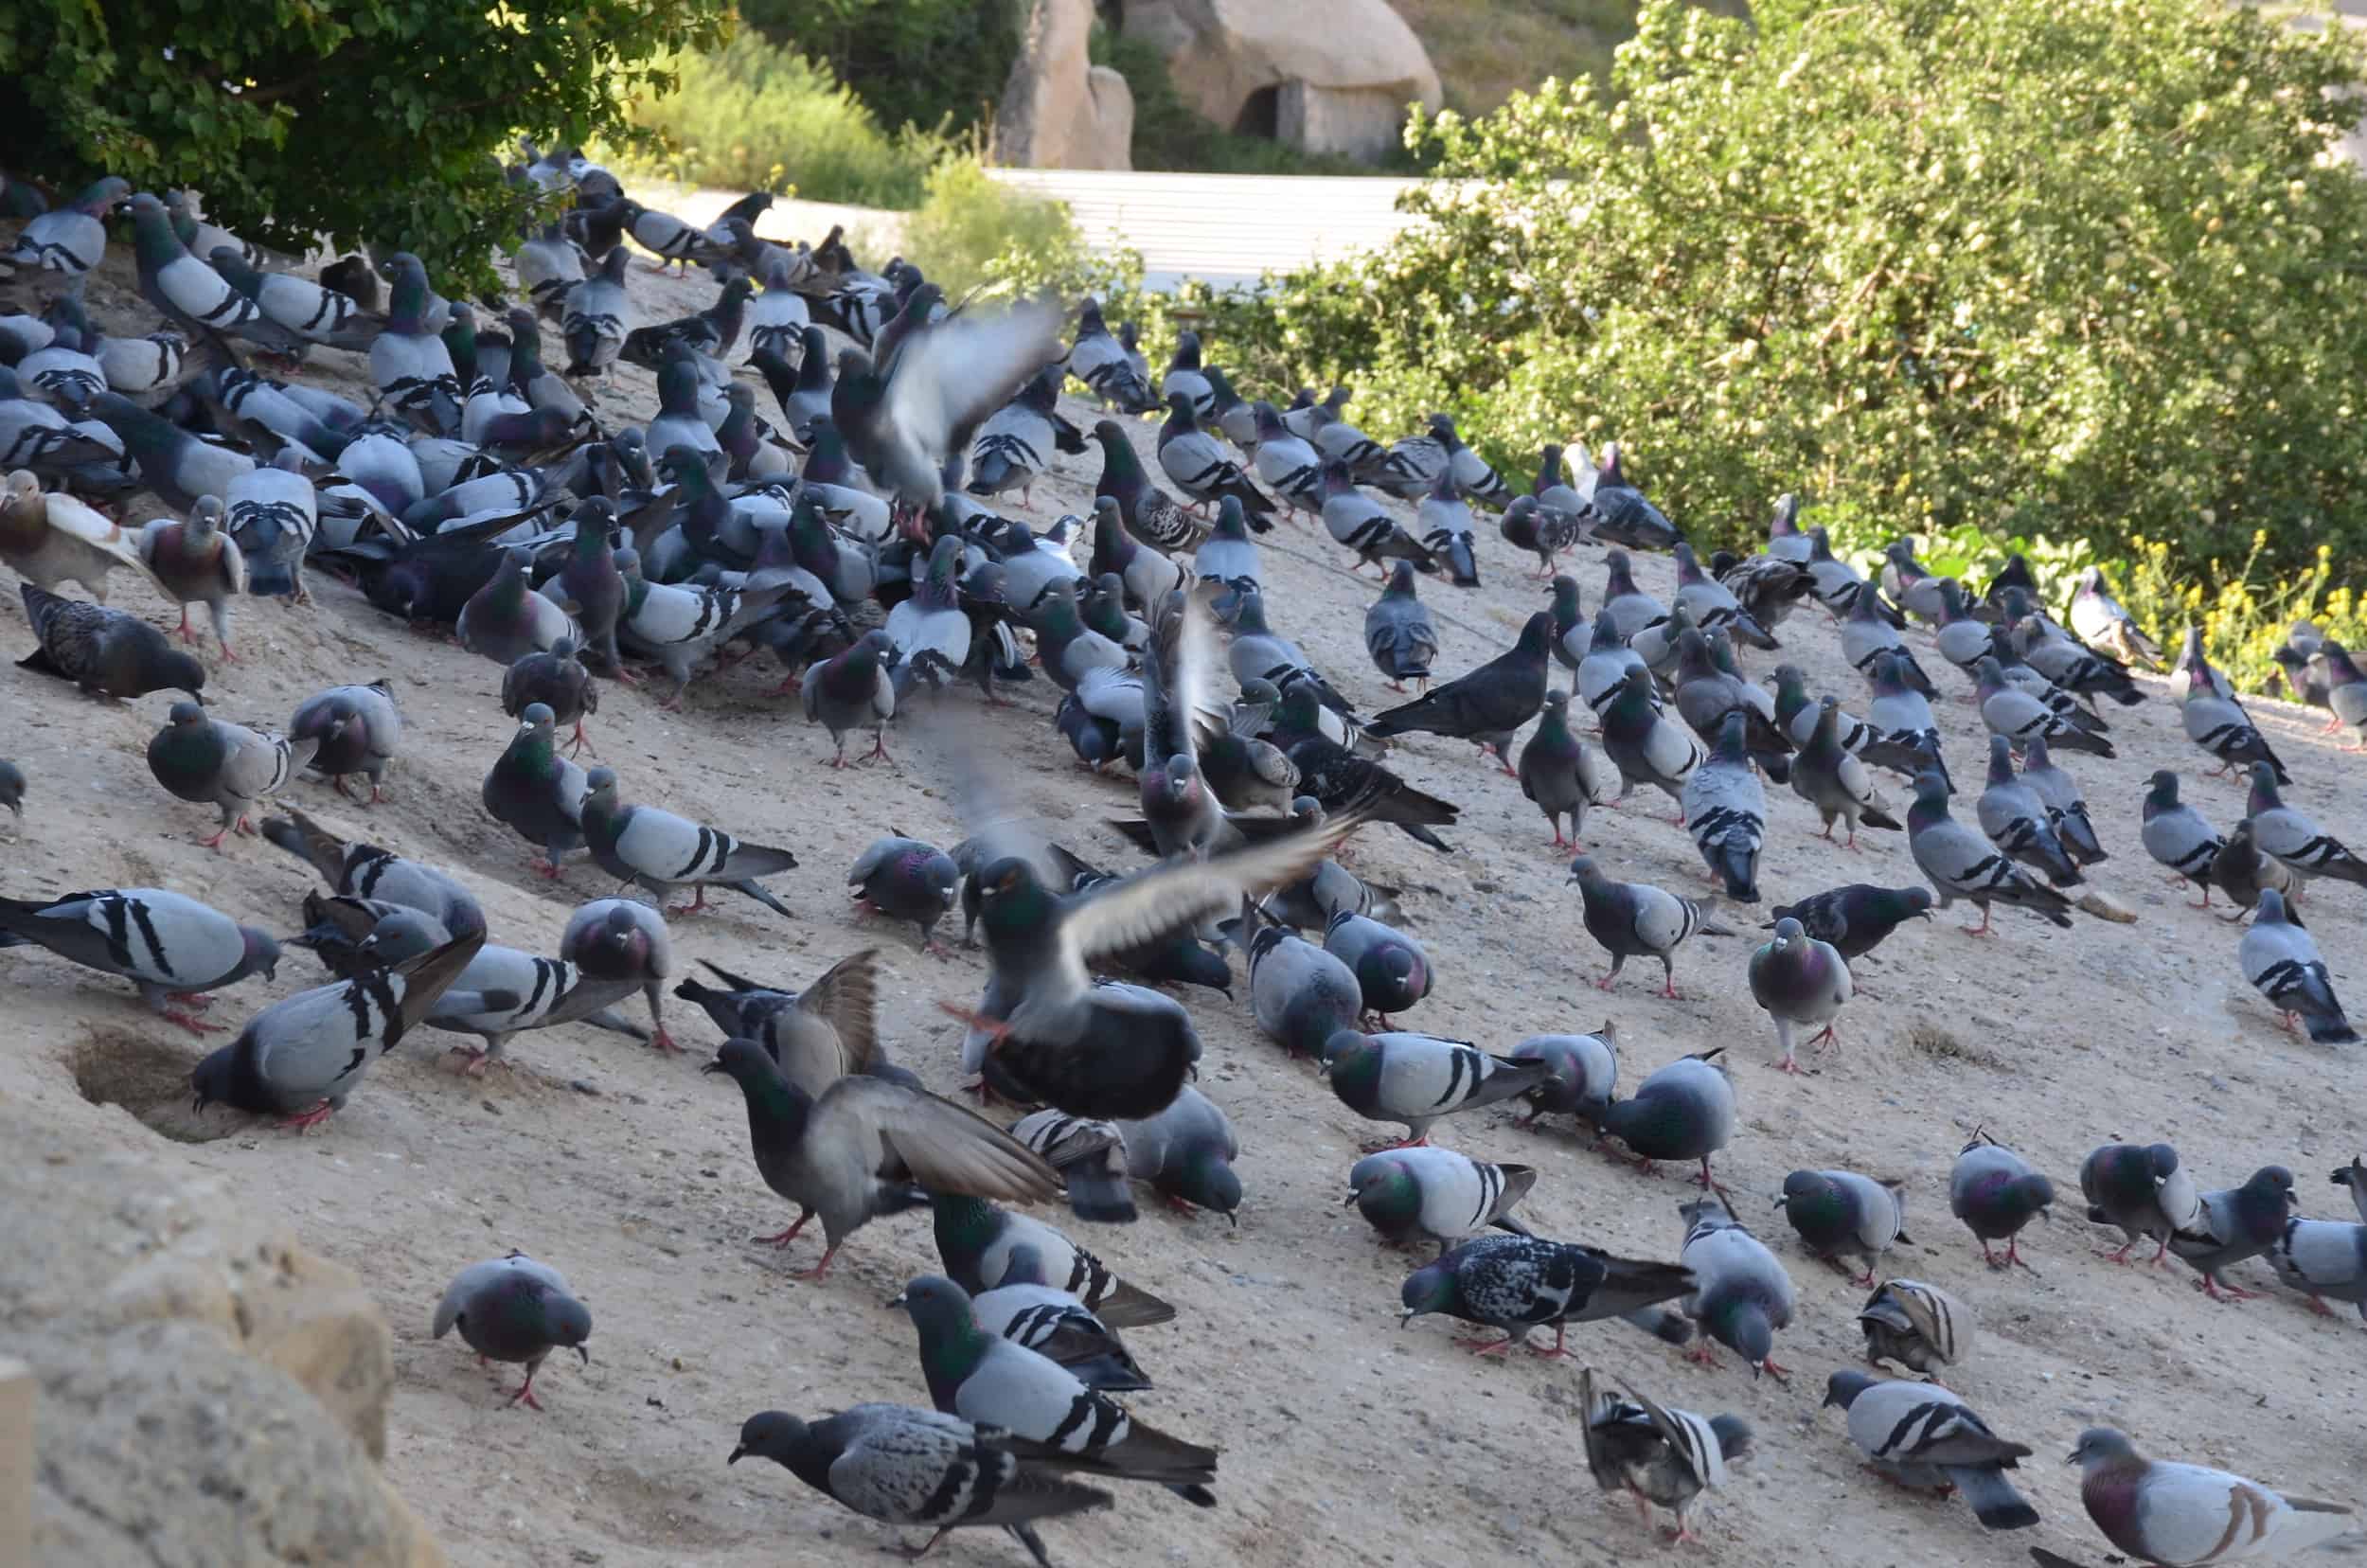 Pigeons at Pigeon Valley in Cappadocia, Turkey